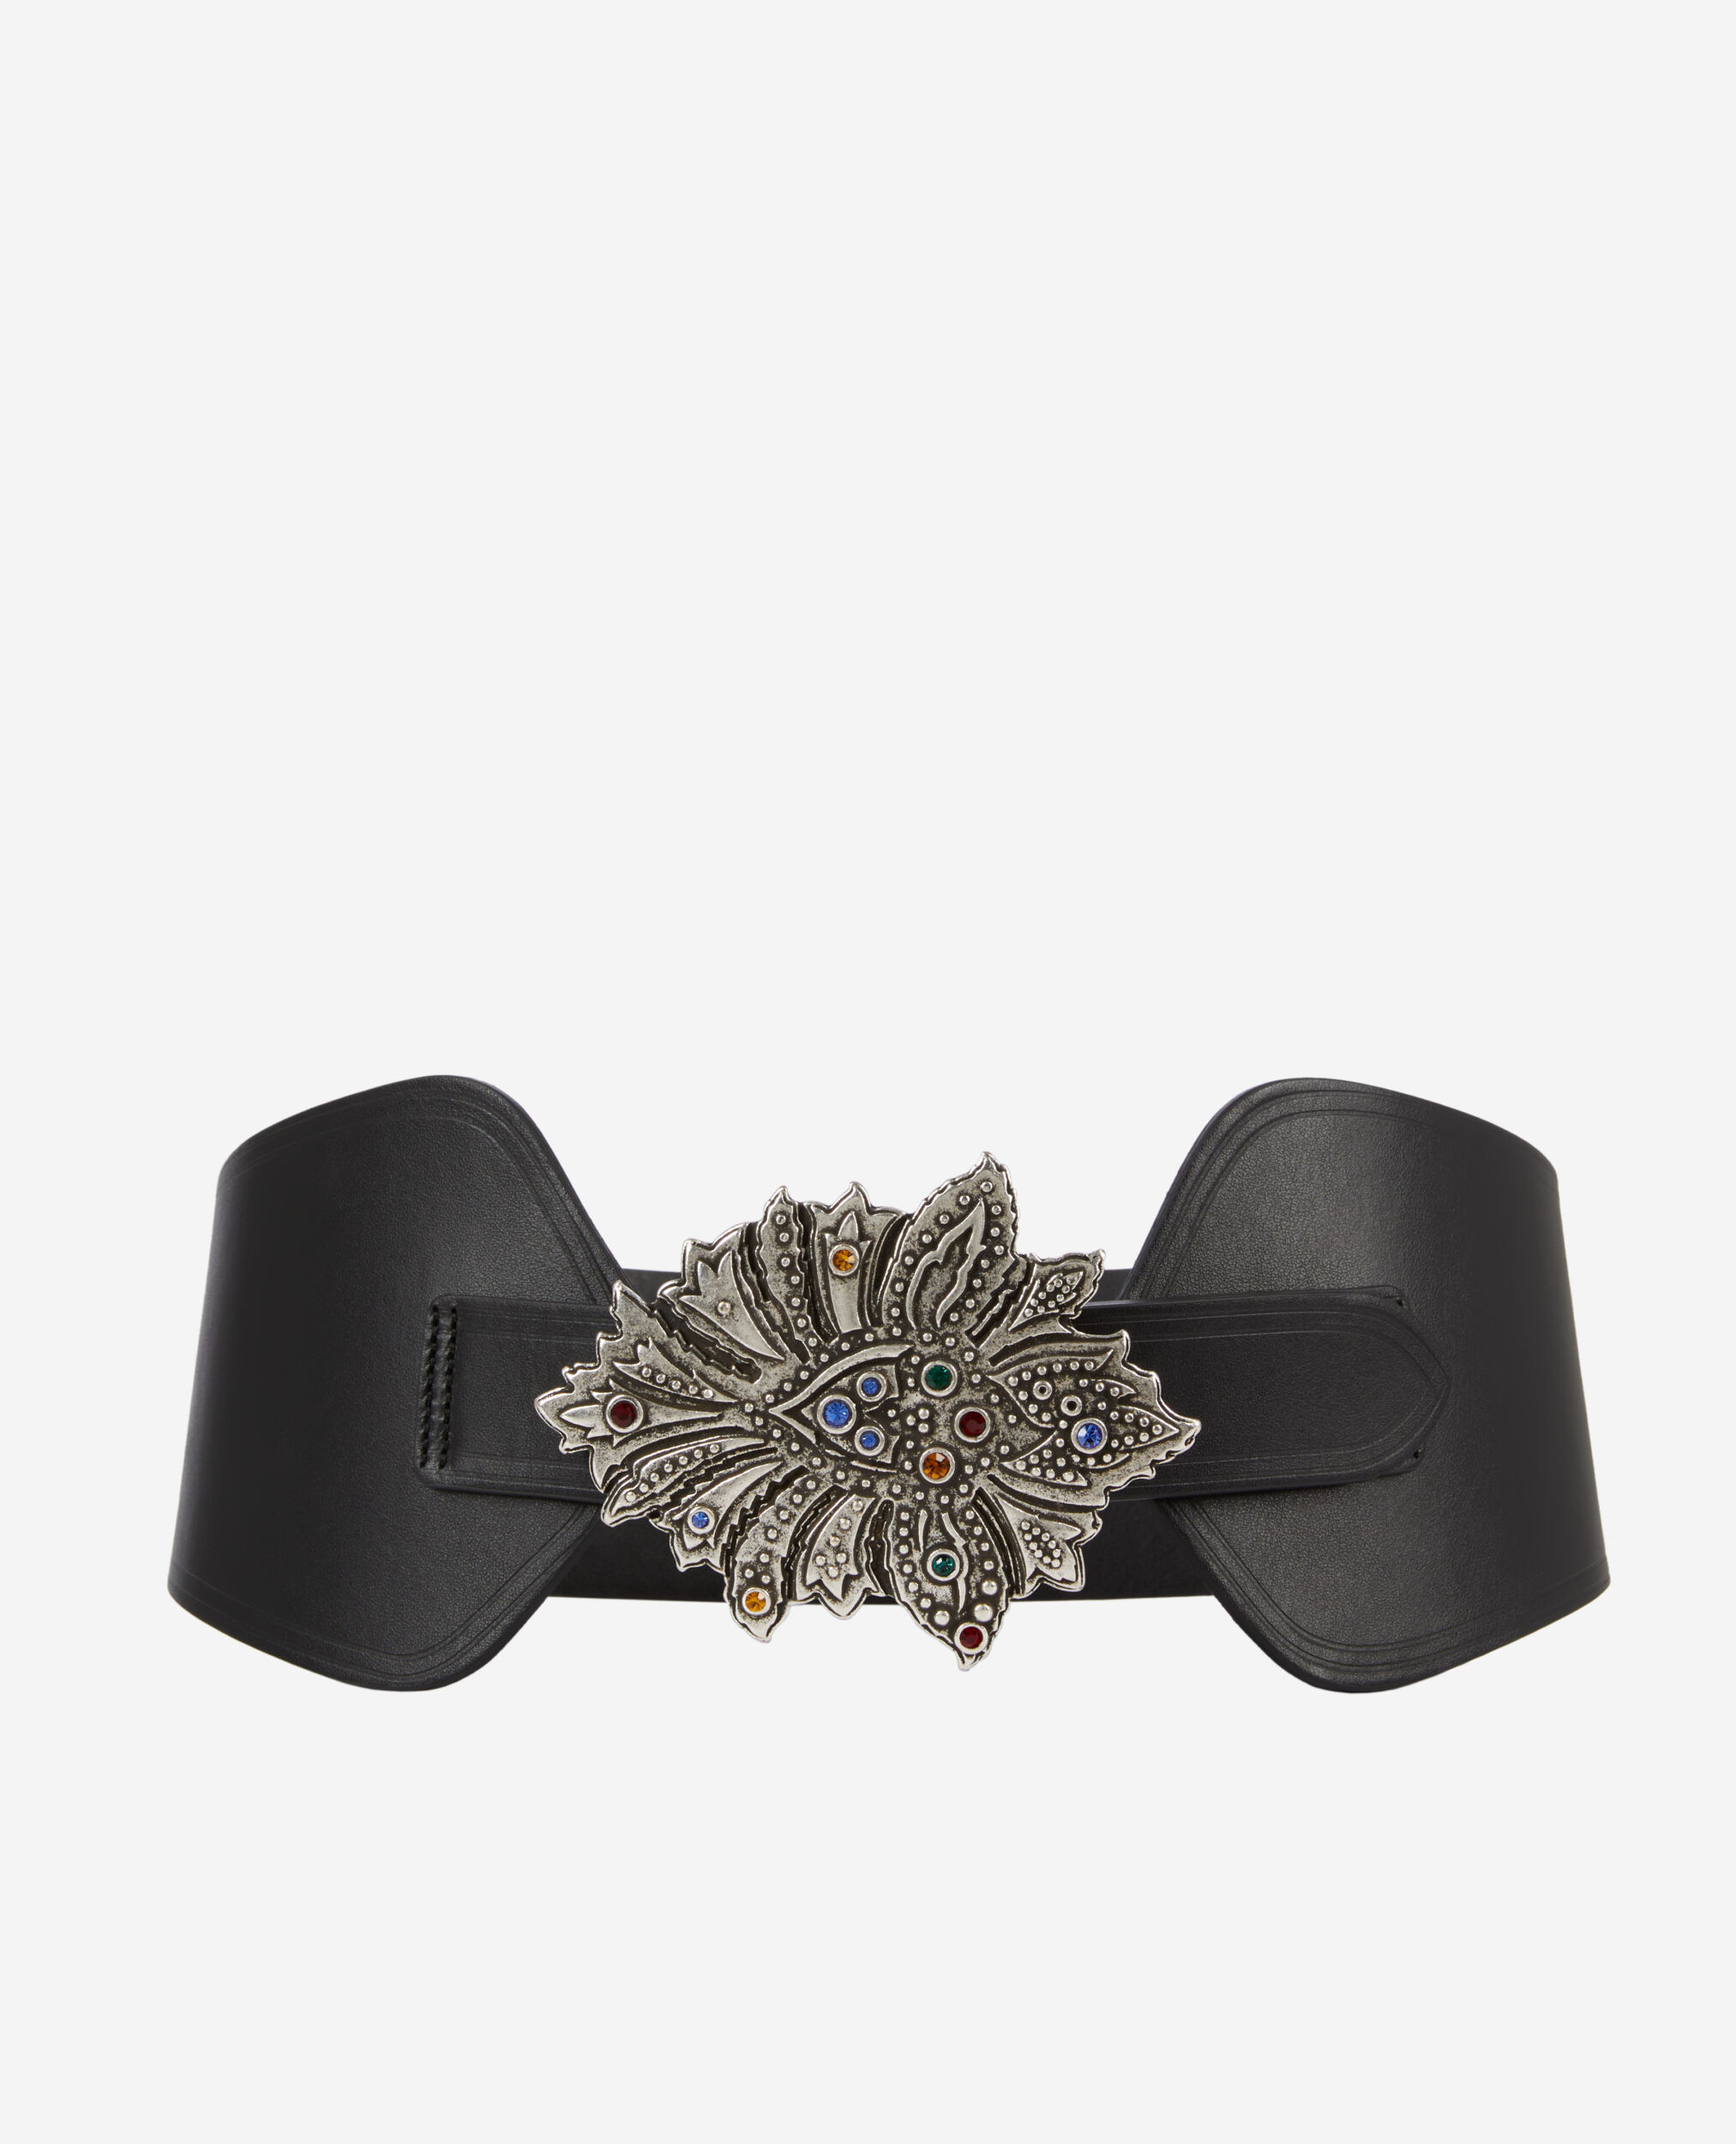 Cinturón ancho piel negro hebilla floral, BLACK, hi-res image number null